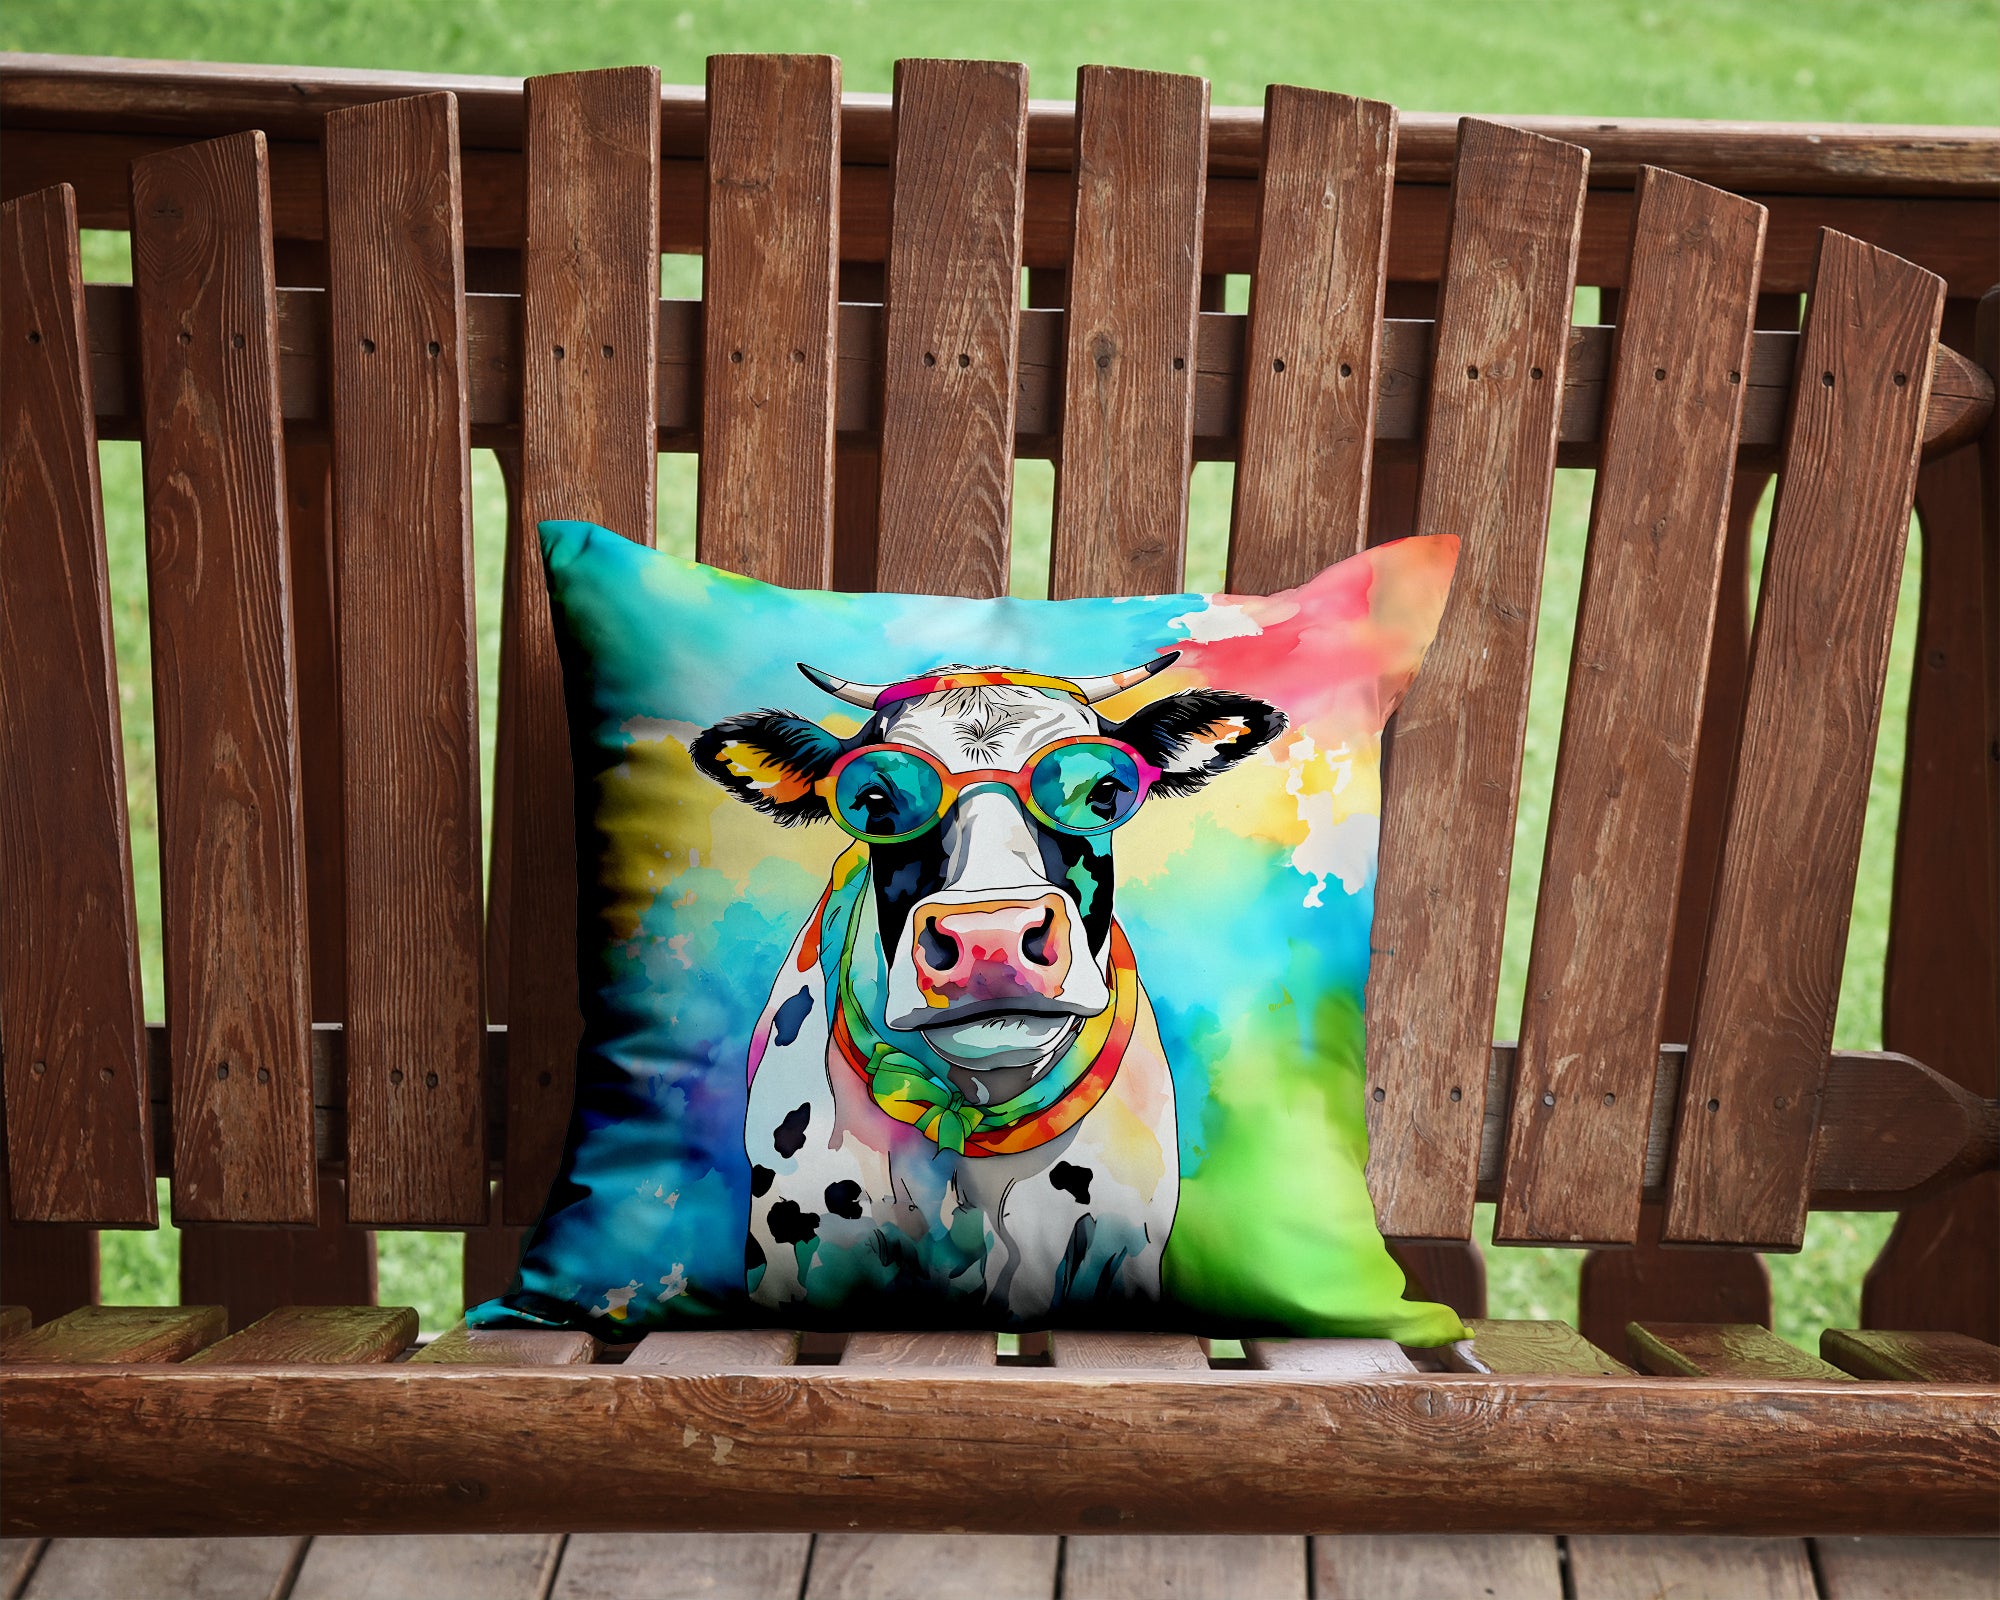 Hippie Animal Cow Throw Pillow